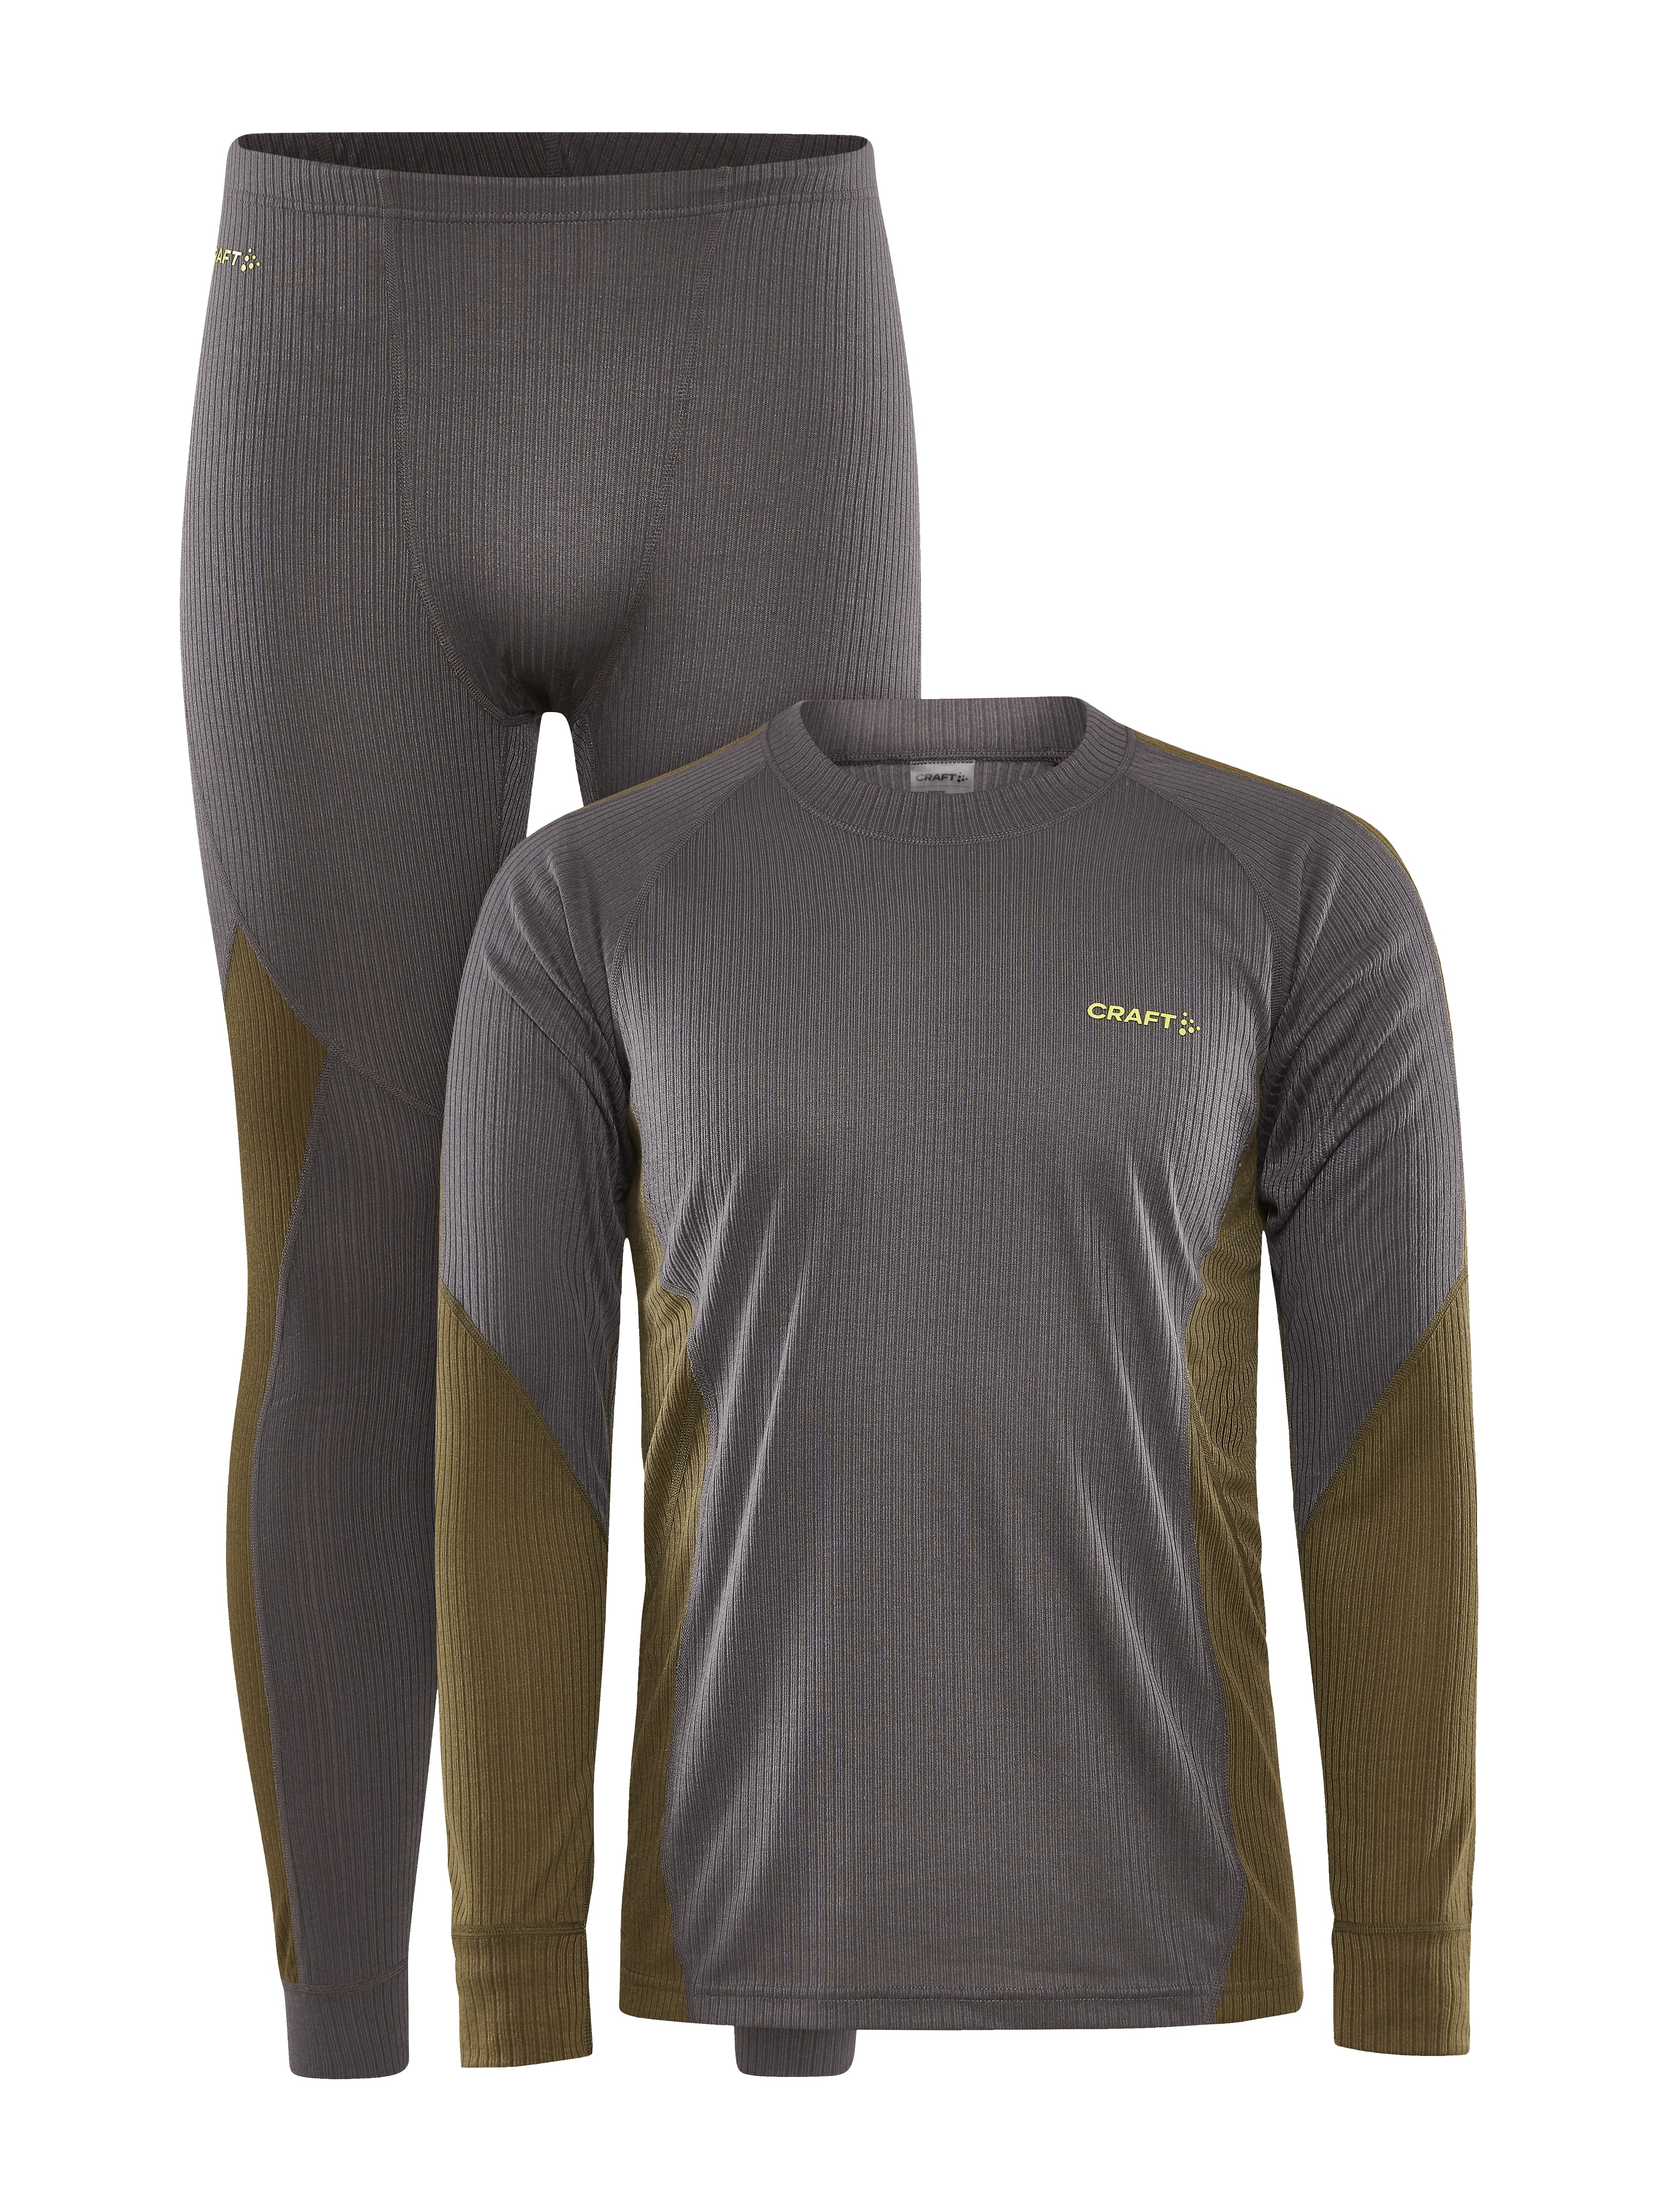 Nike, Pro Core Long Sleeve T Shirt Mens, Baselayer Tops